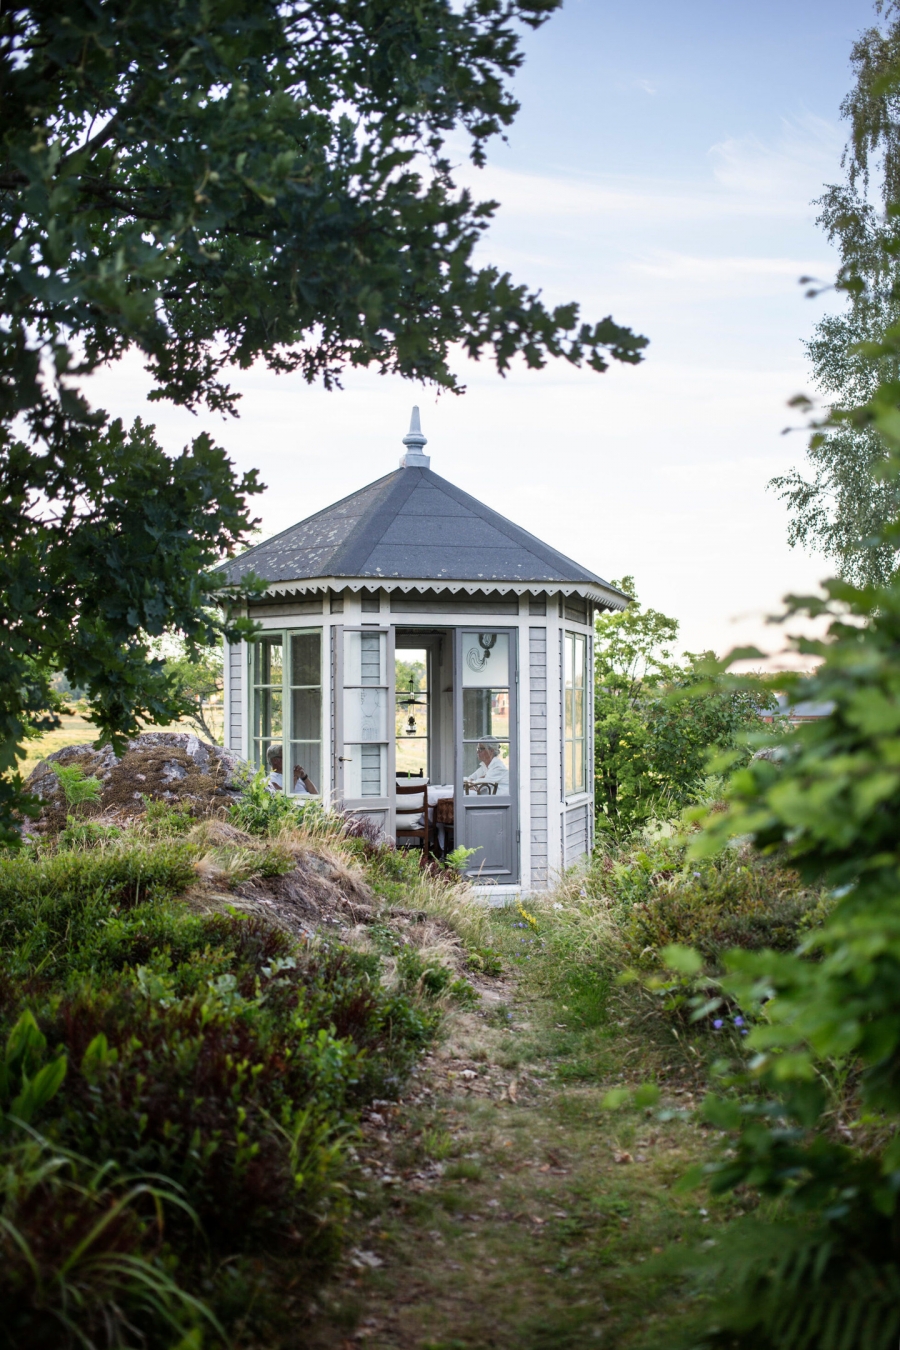 'Lâu đài mini' với tone xanh xám sang trọng trong ngôi nhà đồng quê của vợ chồng nghệ sĩ người Thụy Điển khiến người nhìn cảm giác như đang lạc vào một khu vườn cổ tích. Hình ảnh họ ngồi chuyện trò cùng nhau trông tĩnh tại và thư thái vô cùng.